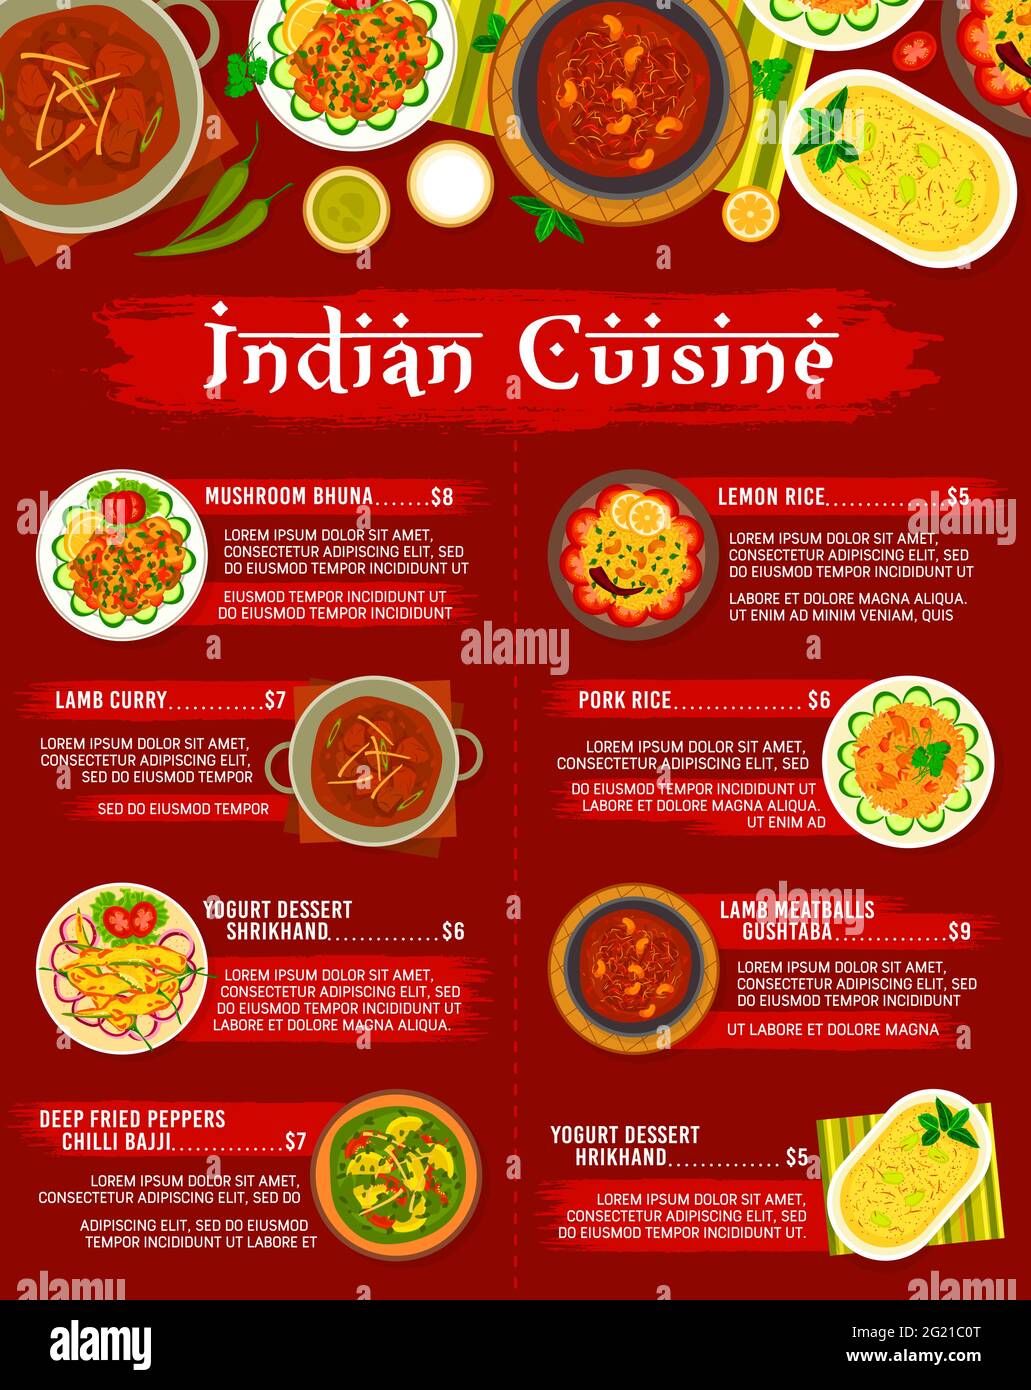 Thiết kế thực đơn nhà hàng Ẩn Độ: Thiết kế thực đơn nhà hàng Ấn Độ sẽ giúp bạn tạo ra một không gian mang đậm chất Á Đông. Cùng với những biểu tượng trang trí truyền thống, bạn có thể kết hợp những gam màu rực rỡ và họa tiết tinh tế để tạo ra một thực đơn đẹp mắt.